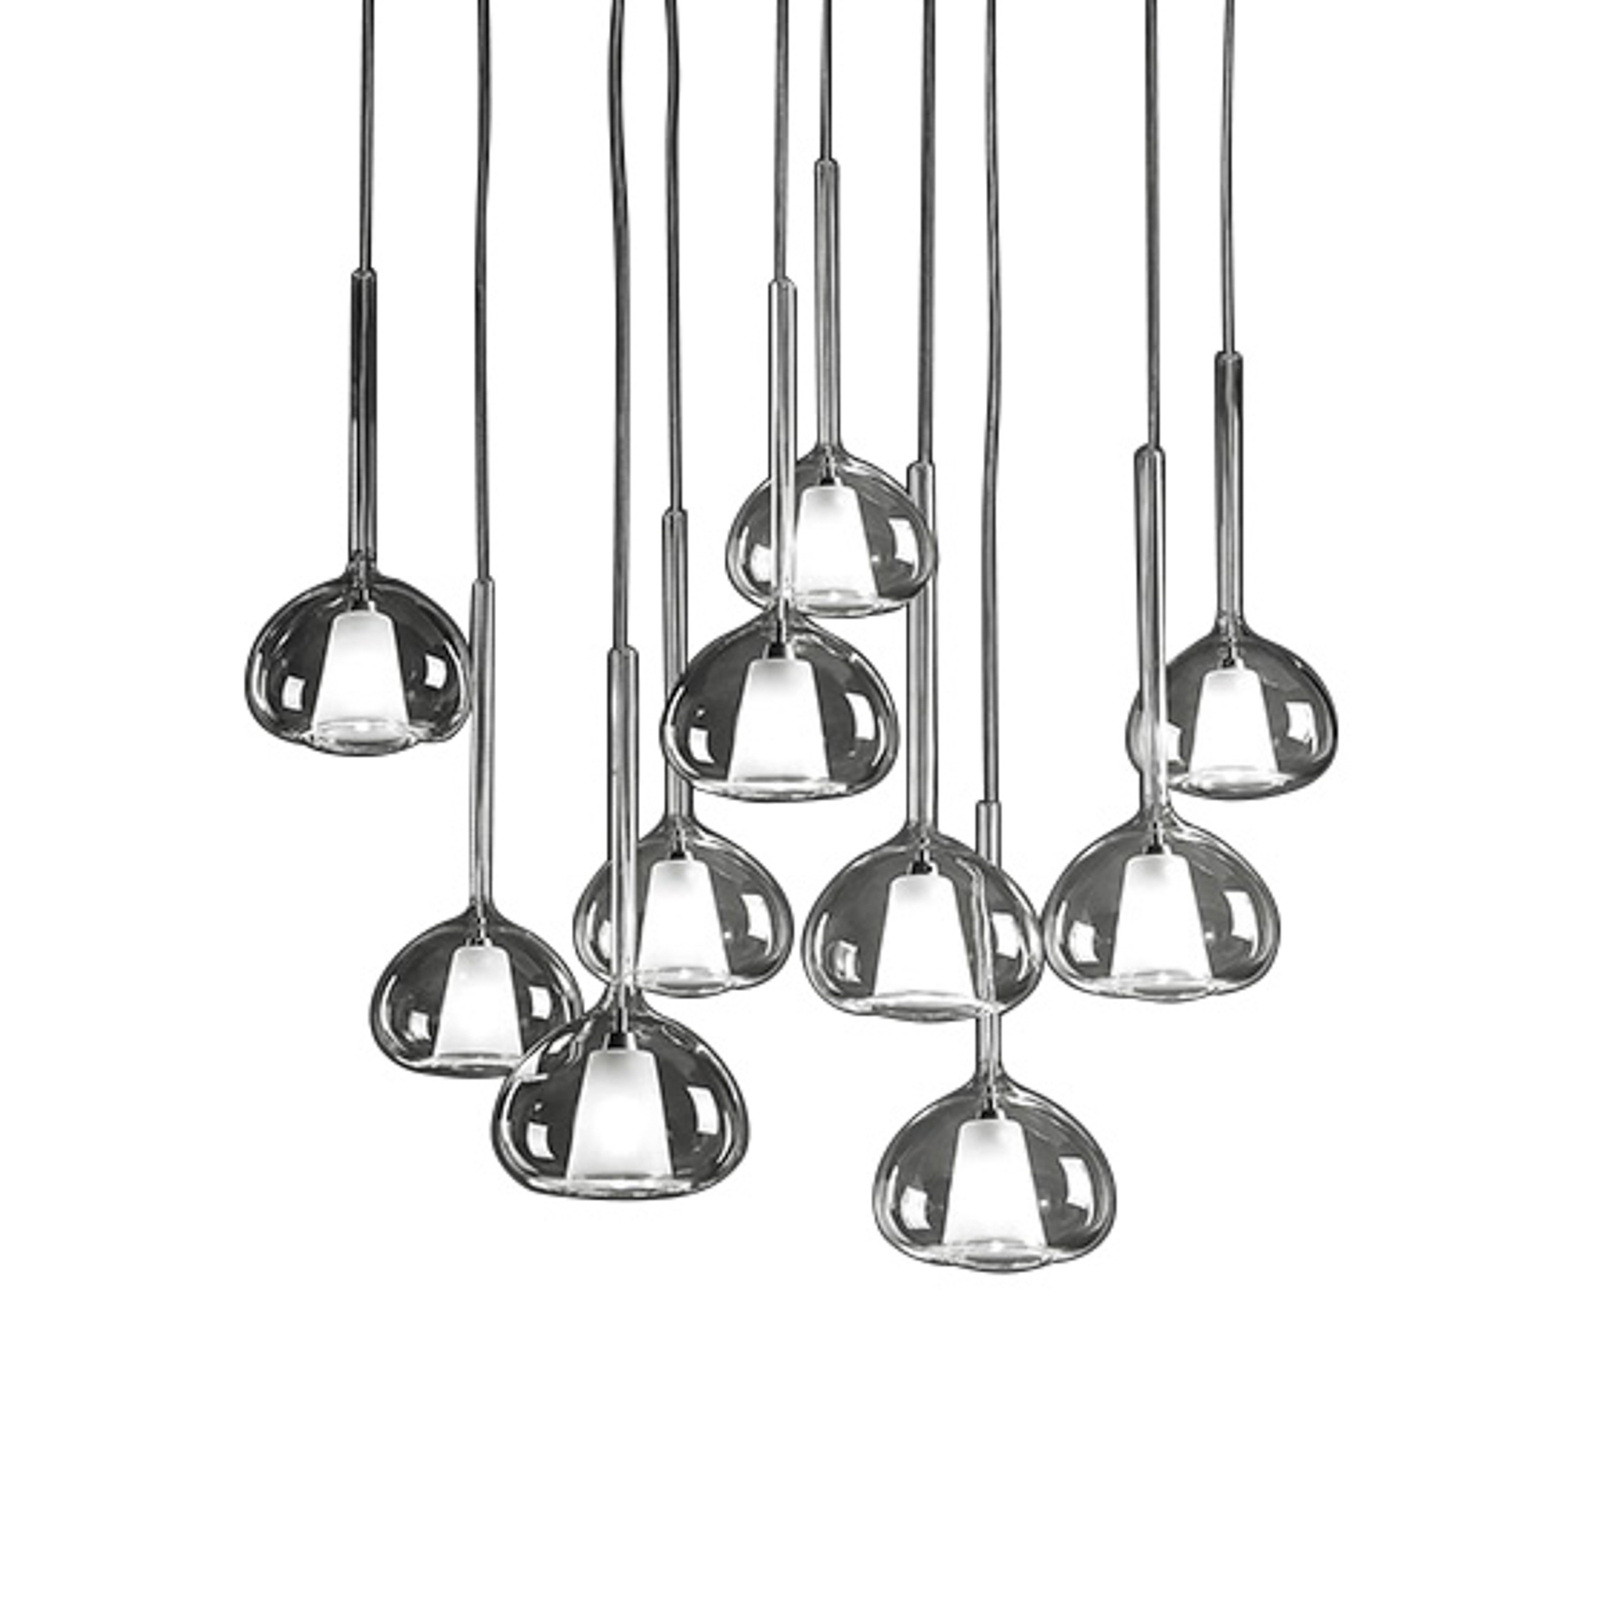 Unieke Glas hanglamp Beba, 10-lamps.